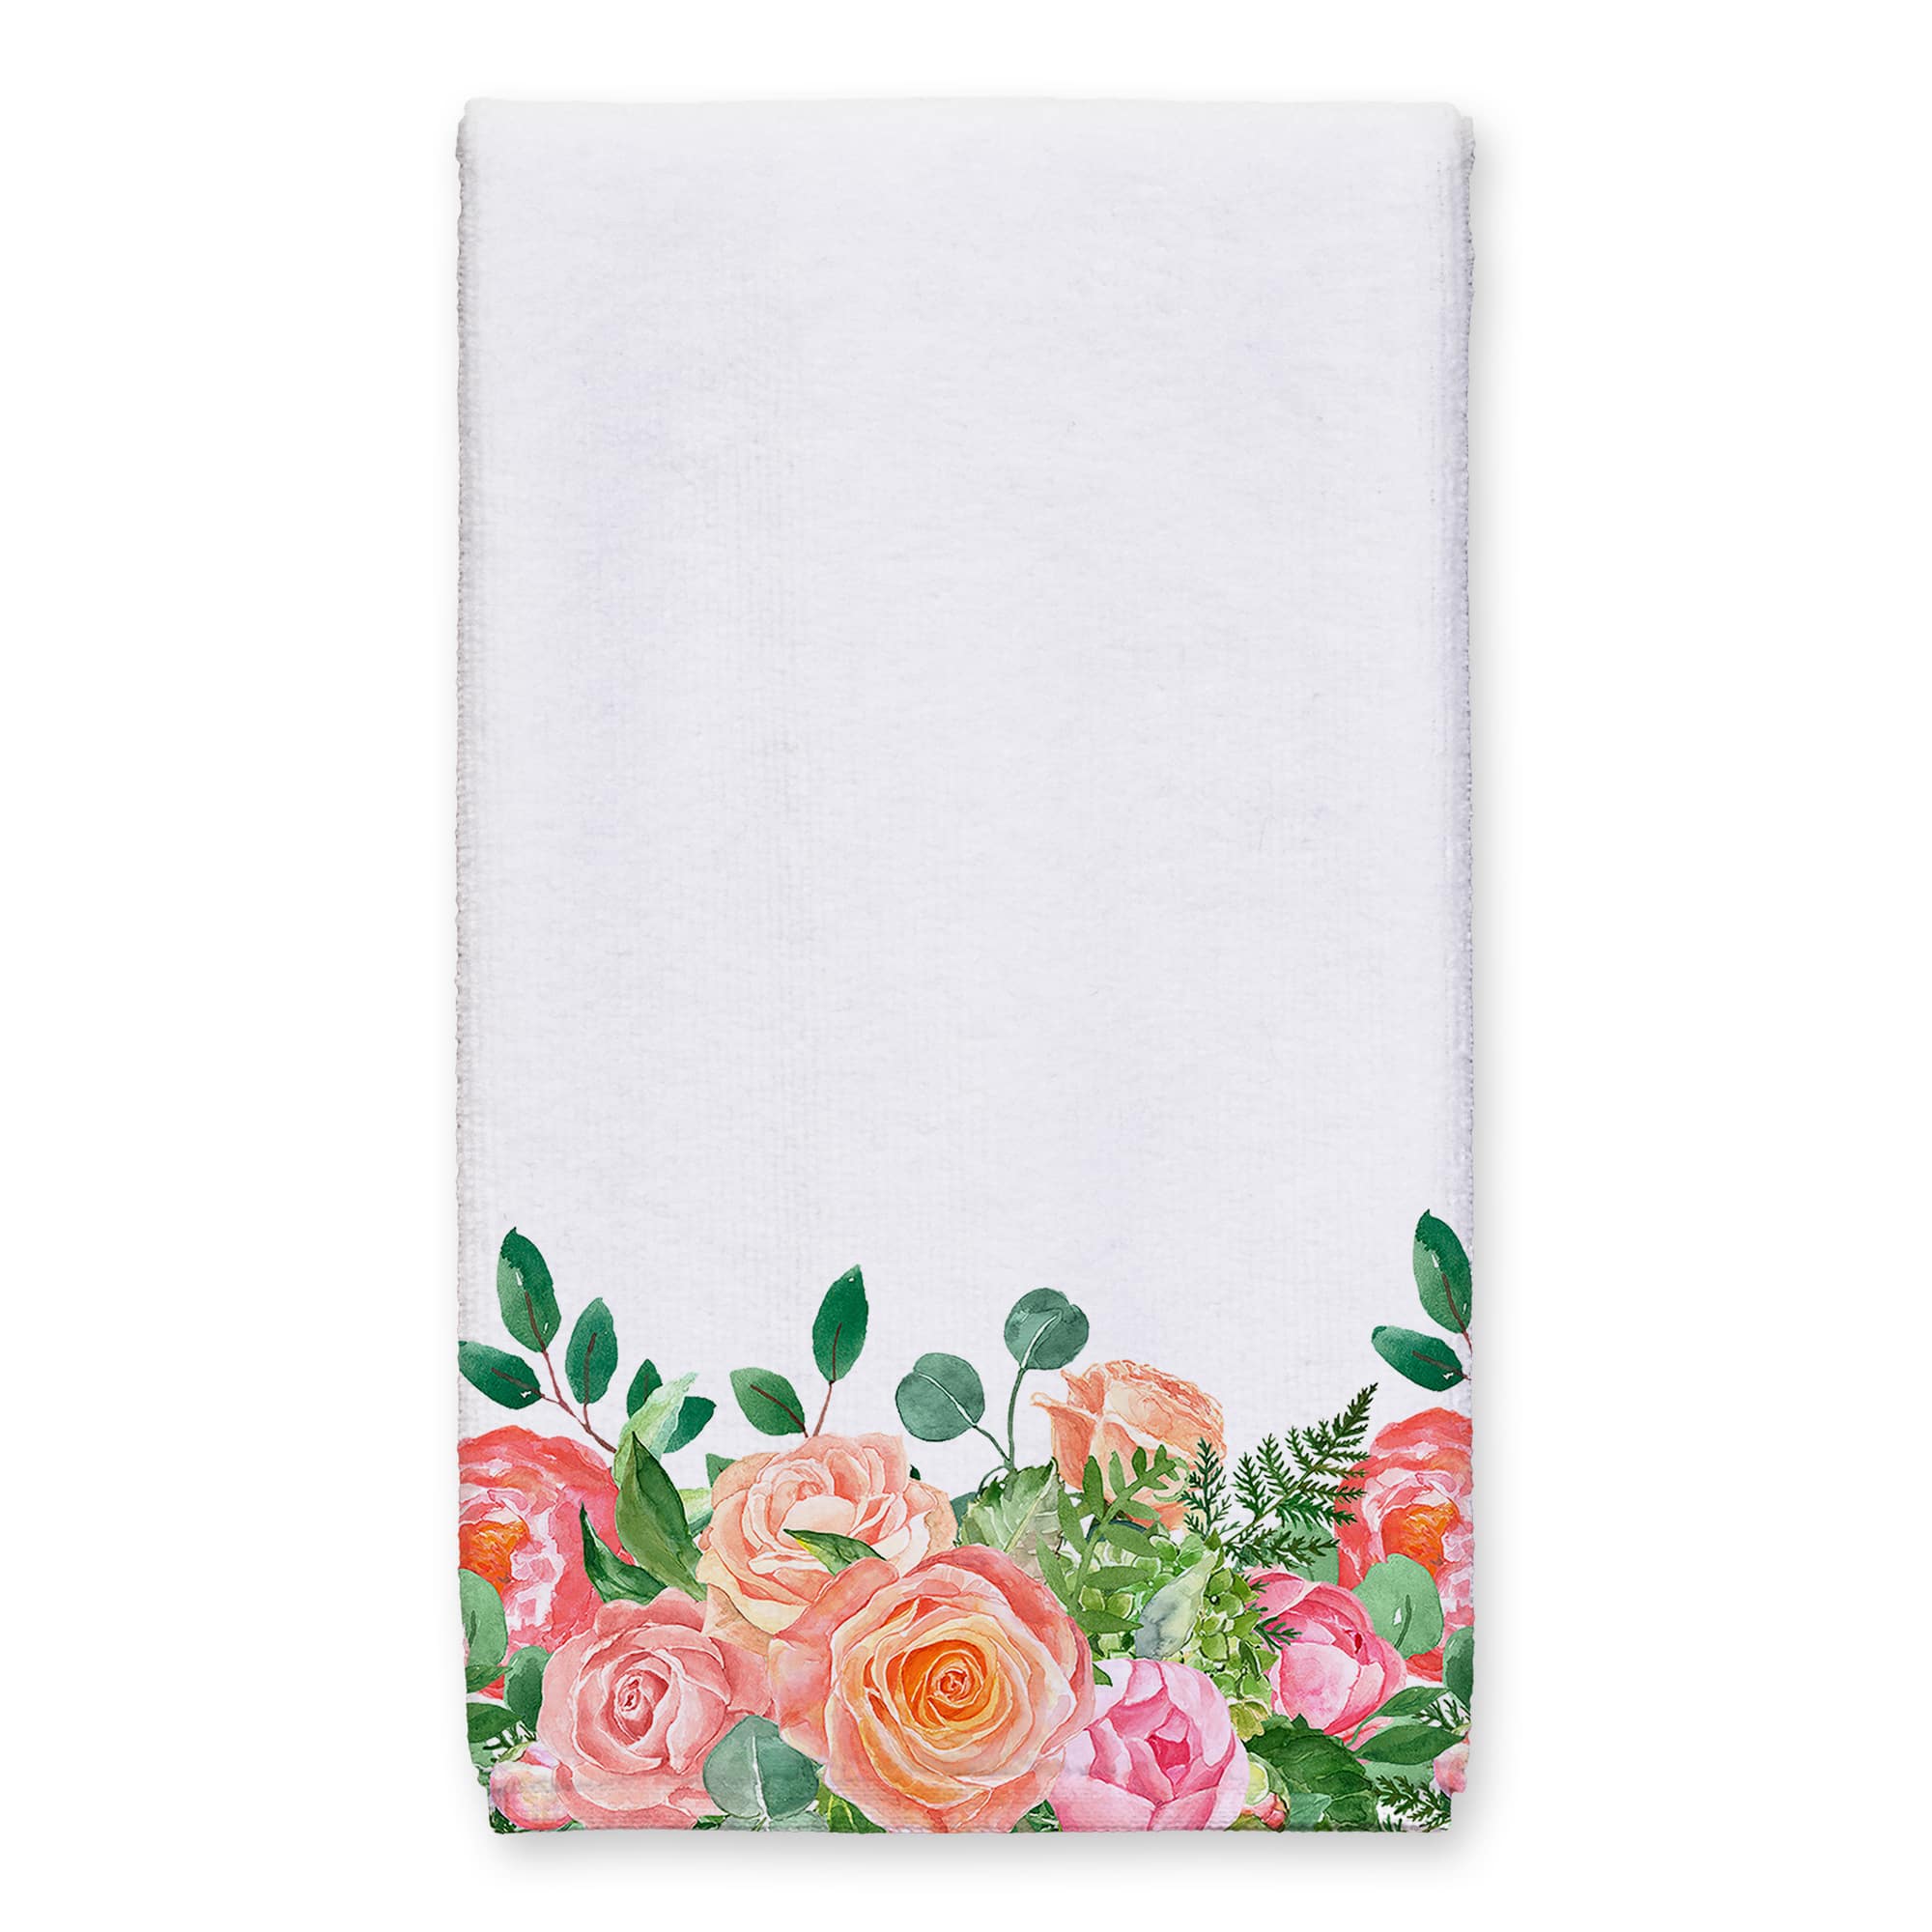 Flower Delivery Tea Towel Set